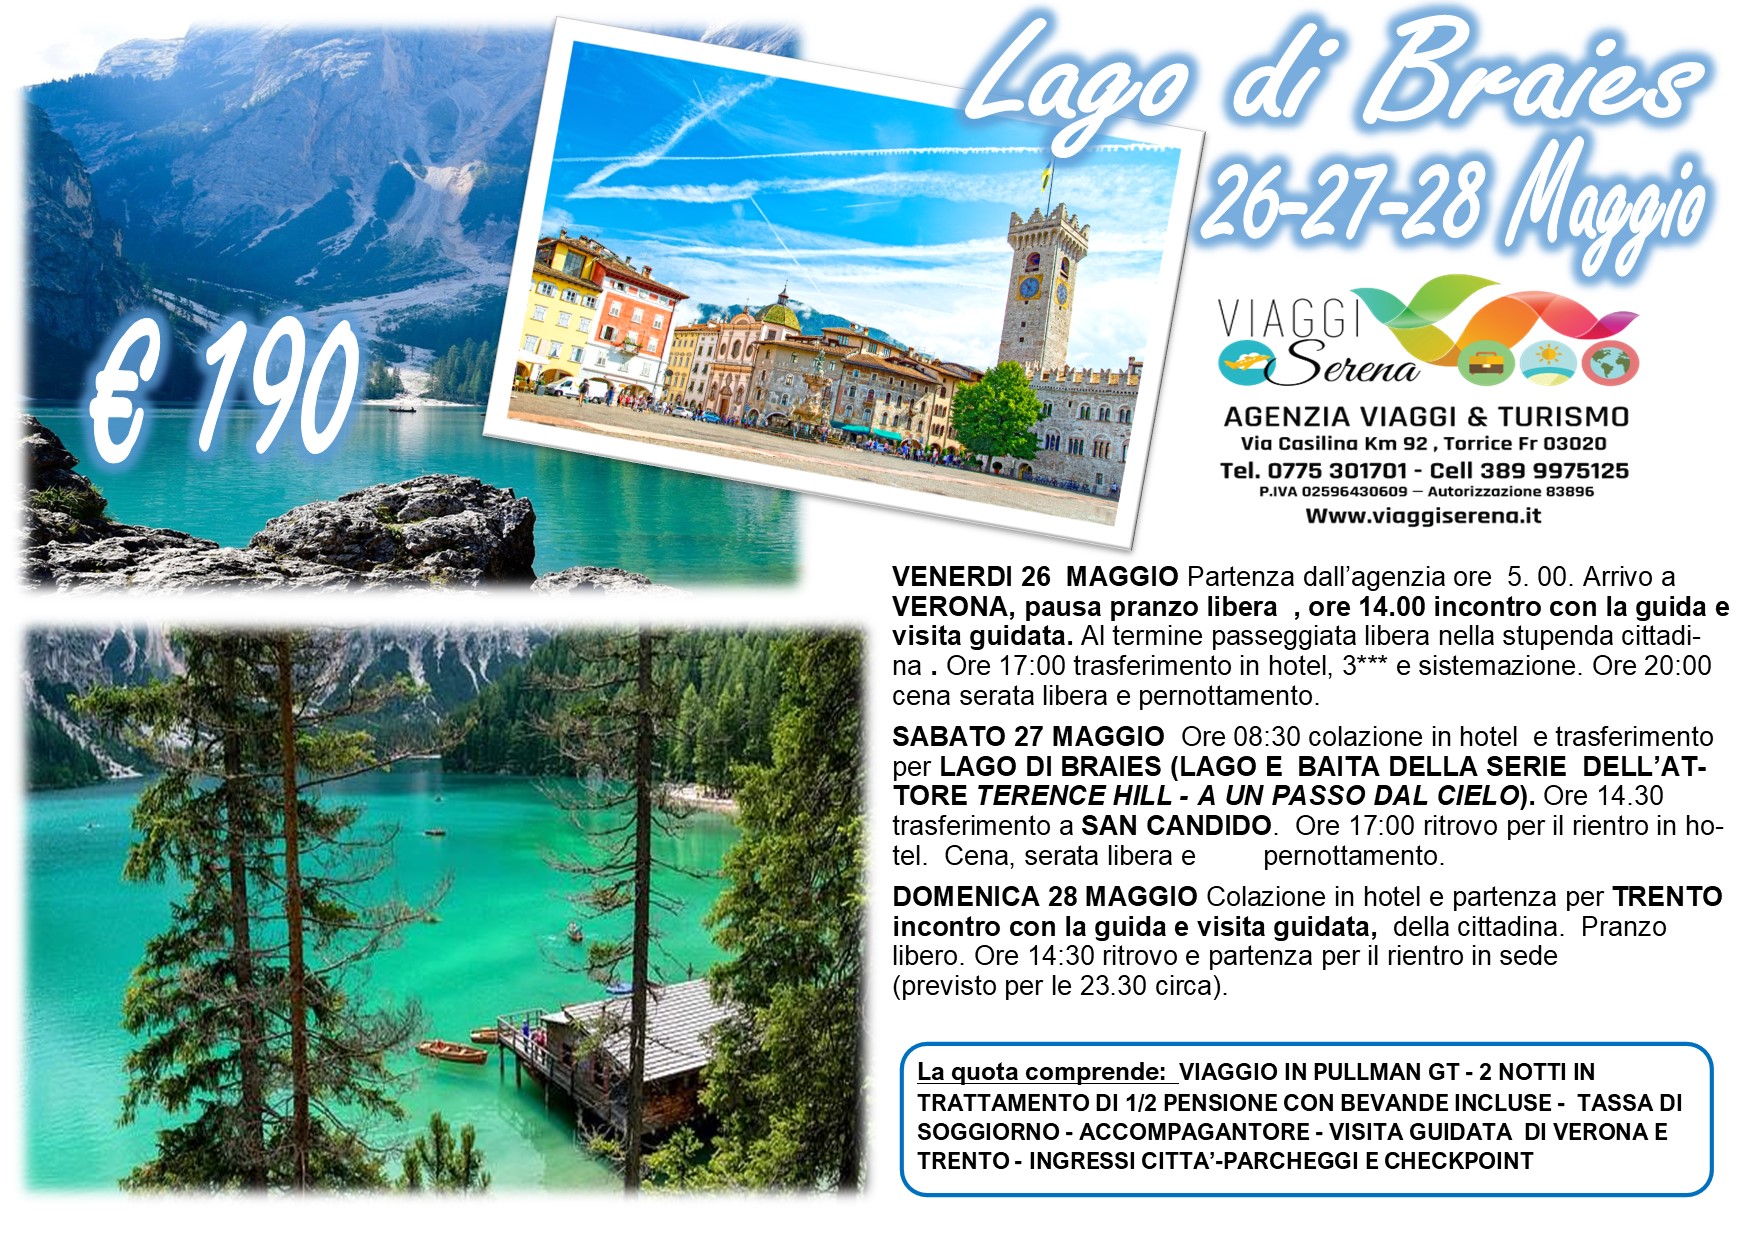 Viaggi di Gruppo: Lago di BRAIES , Verona, San Candido & Trento 26-27-28 Maggio € 190,00